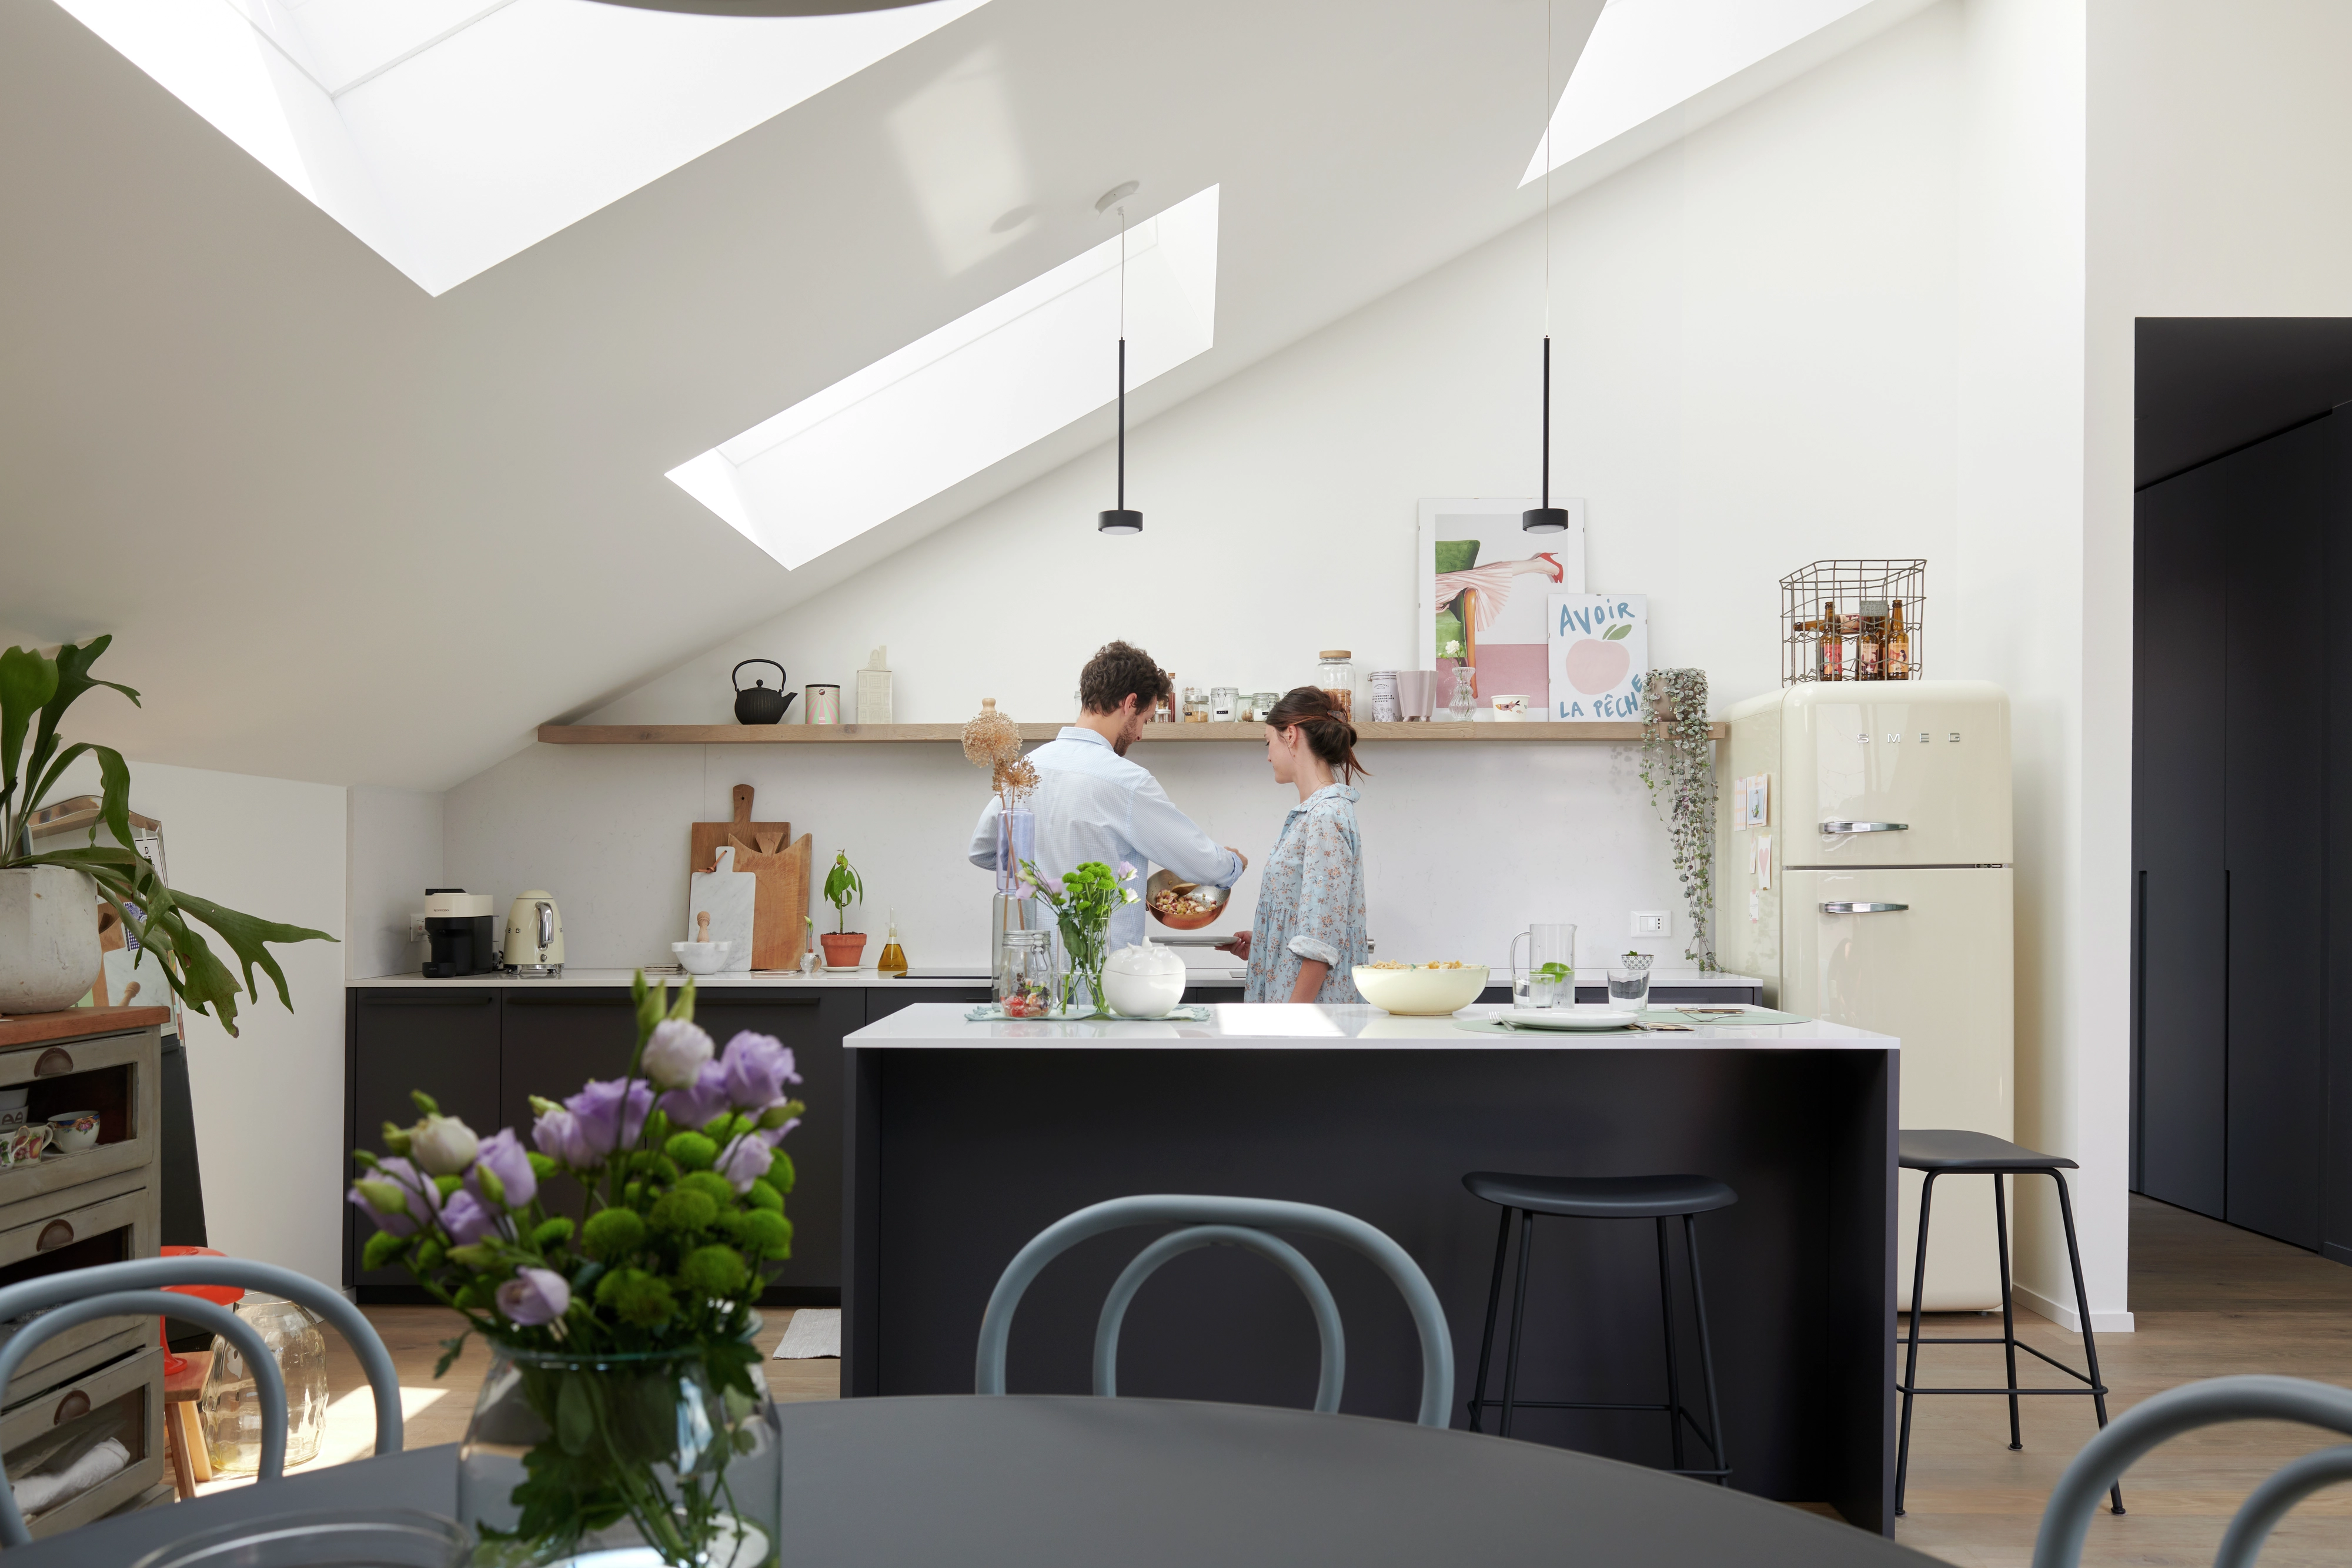 Cucina moderna e luminosa con finestre per tetti VELUX, piani di lavoro neri e frigorifero color crema.